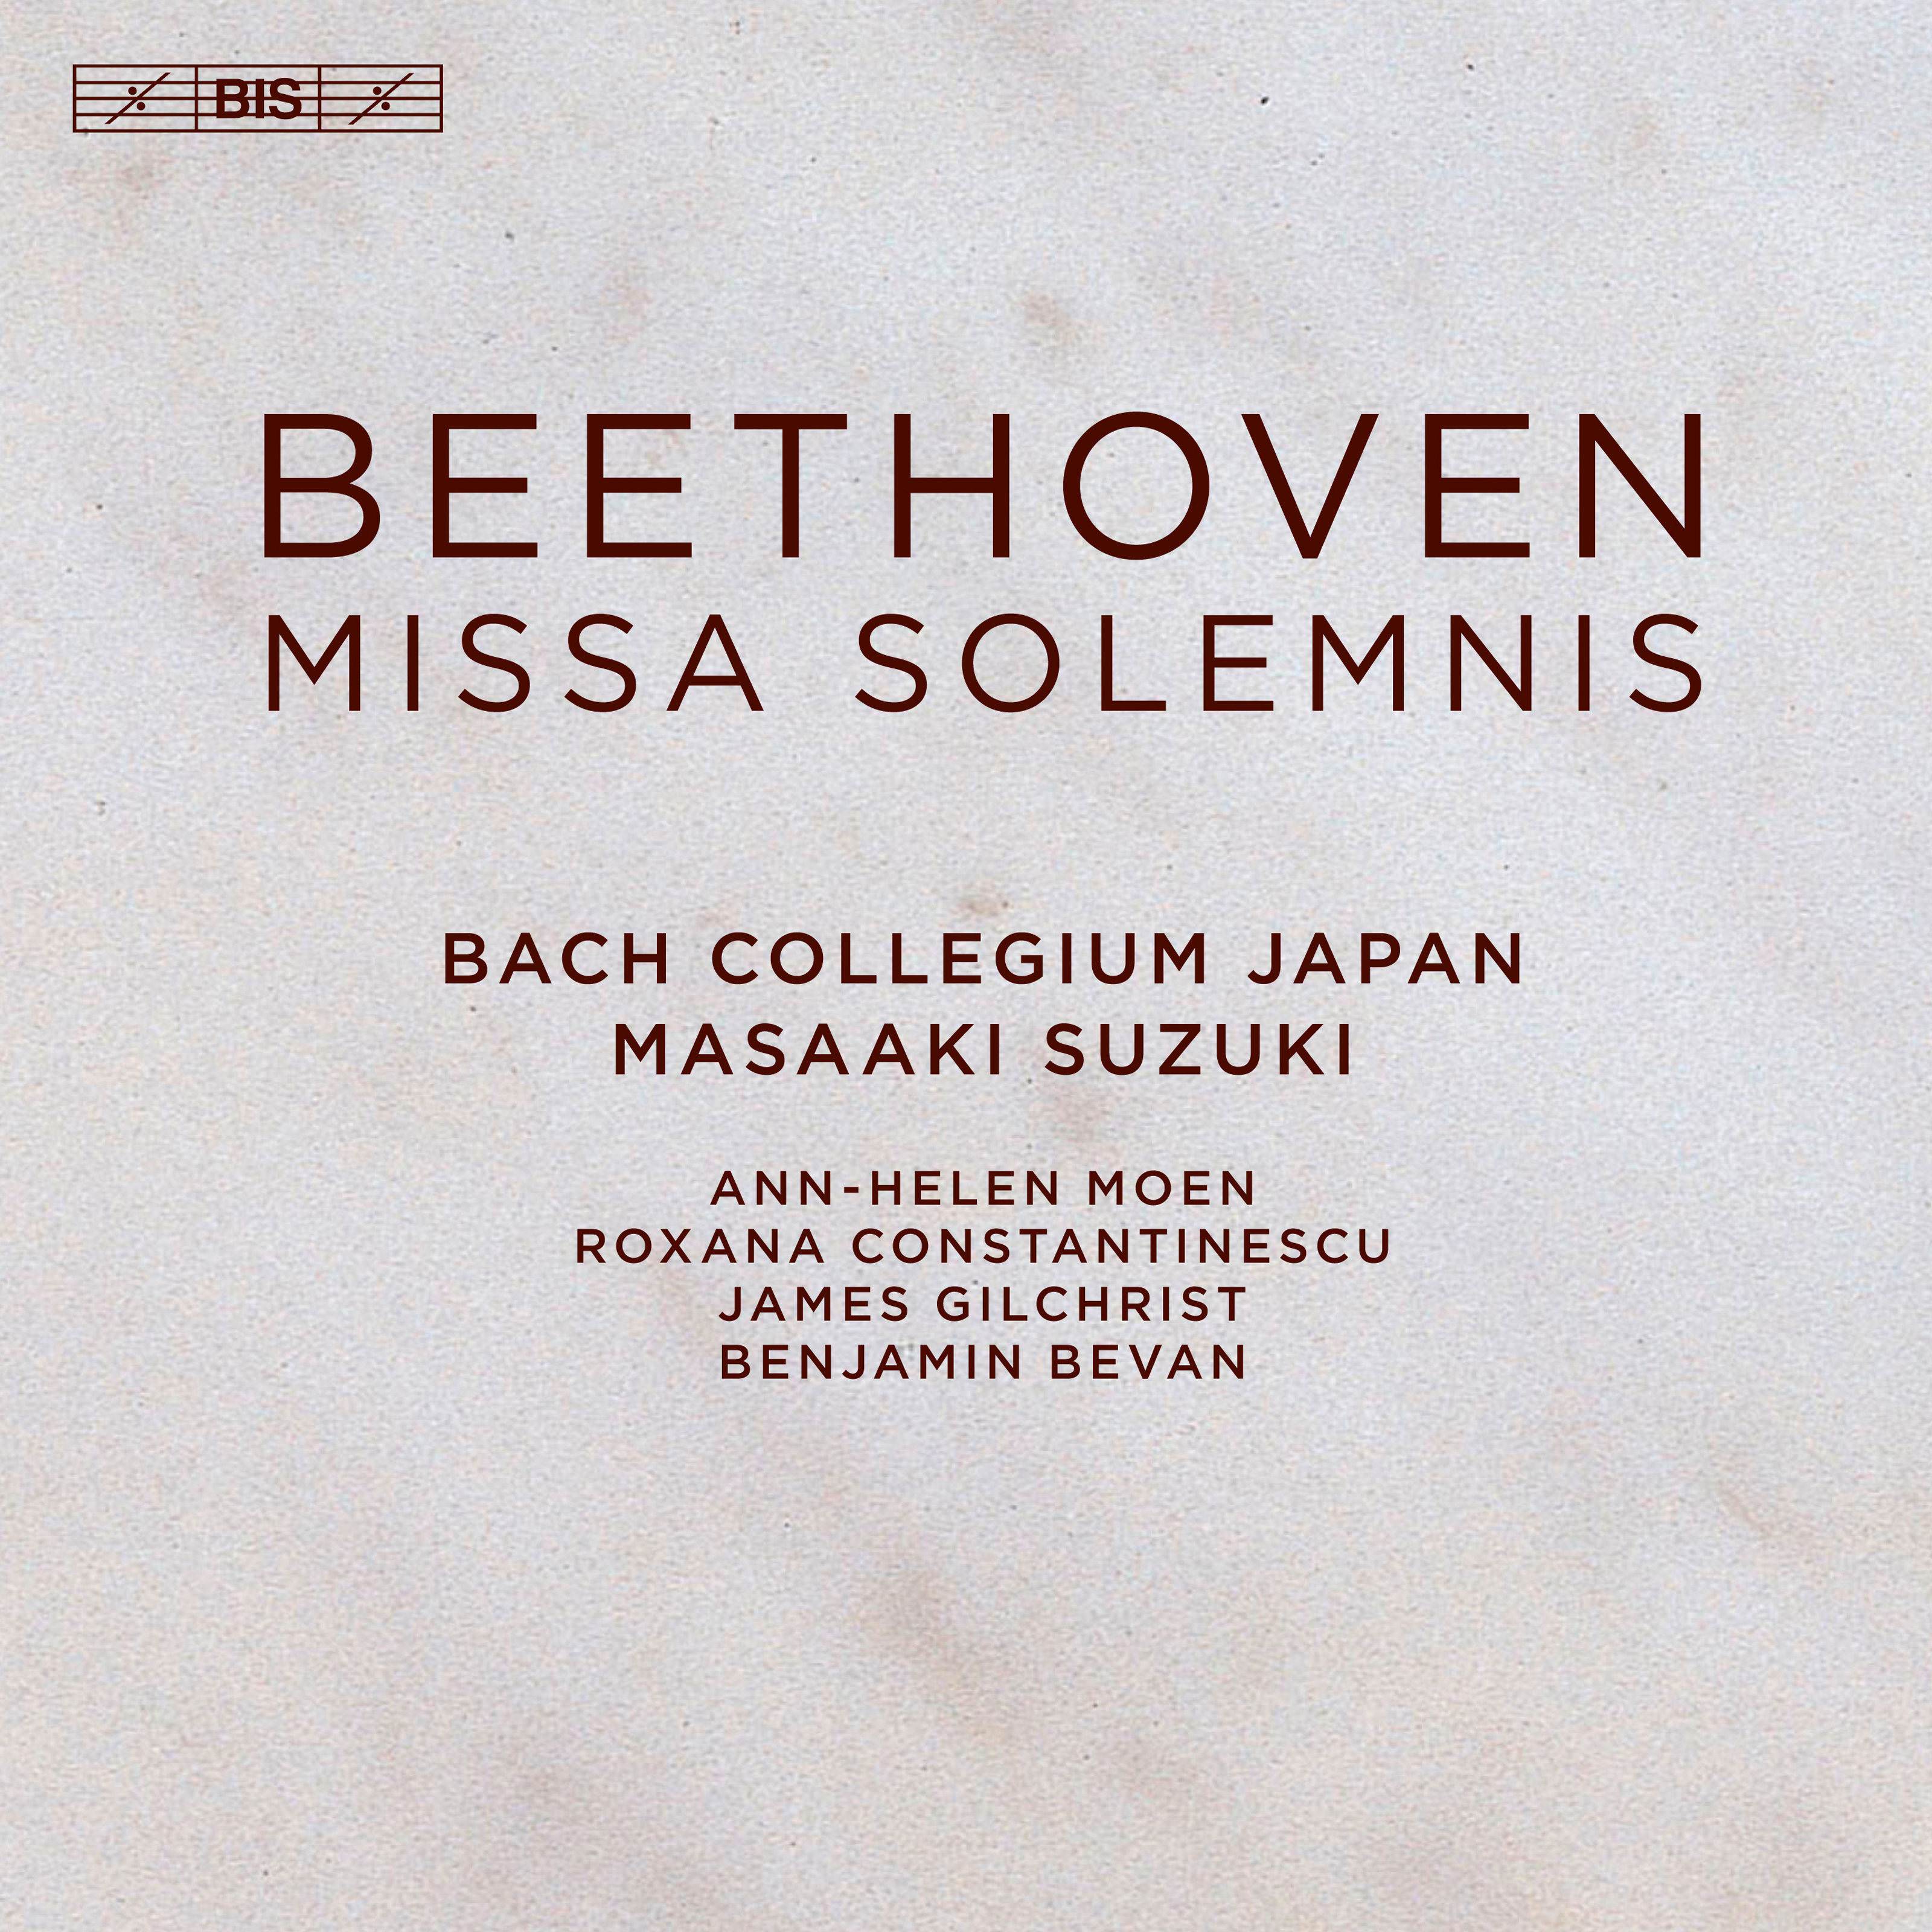 Bach Collegium Japan & Masaaki Suzuki - Beethoven: Missa solemnis, Op. 123 (2018) [FLAC 24bit/96kHz]